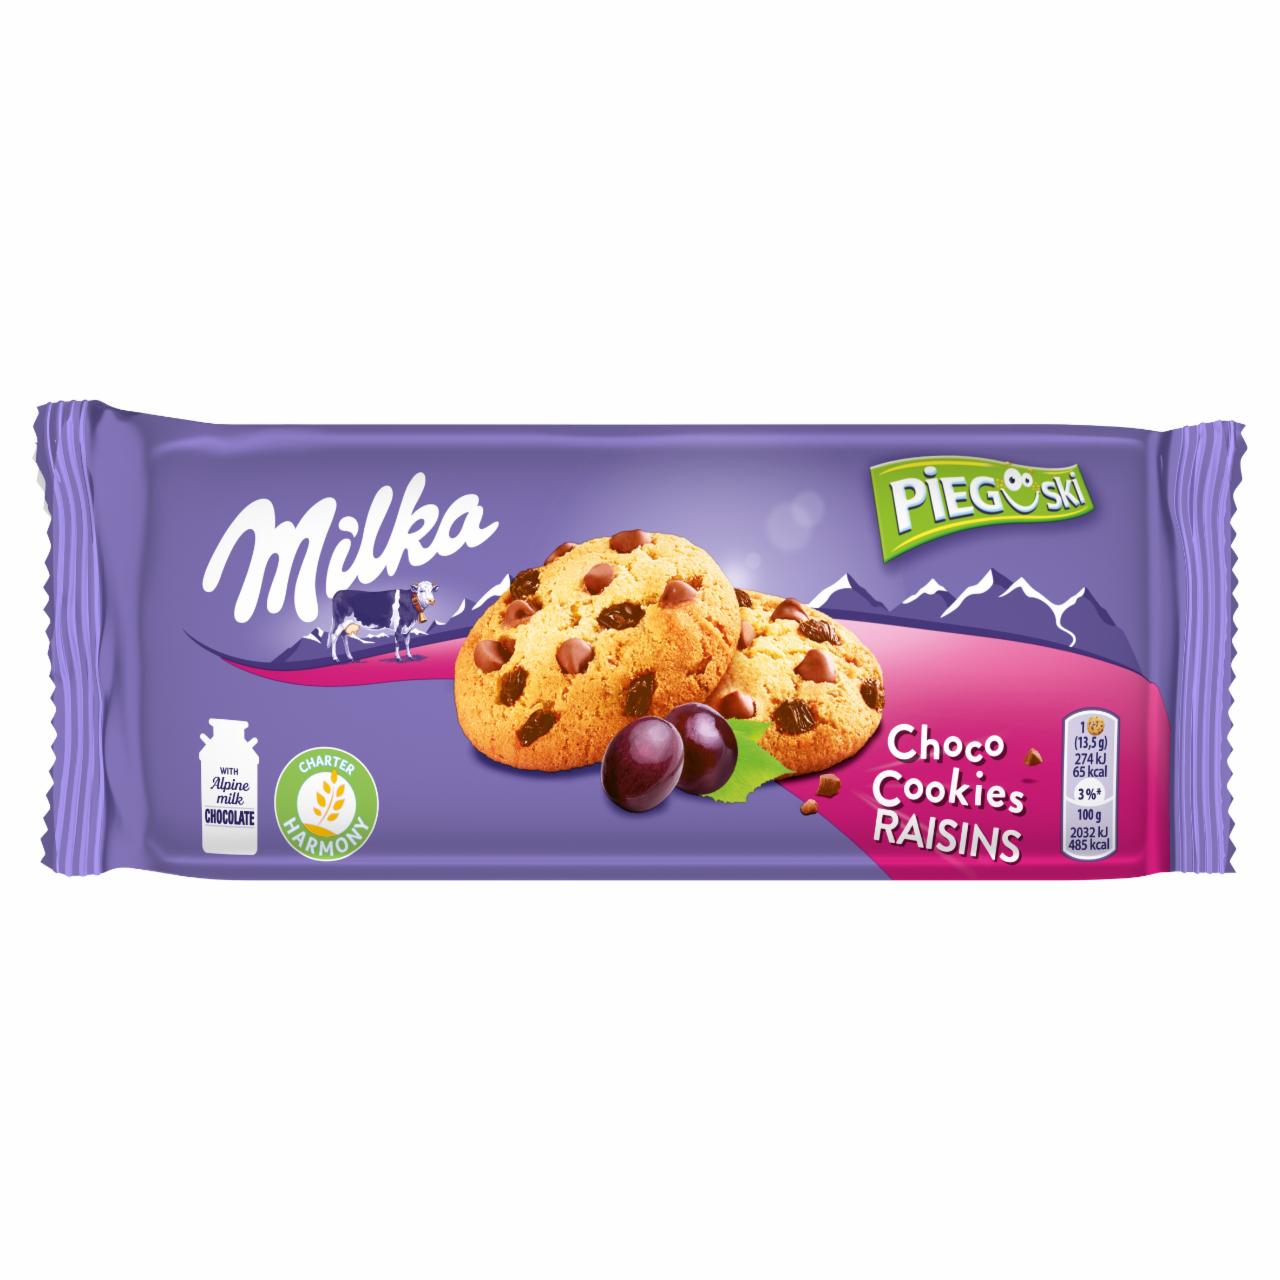 Zdjęcia - Milka Pieguski Choco Cookies Raisins Ciasteczka z kawałkami czekolady mlecznej i rodzynkami 135 g